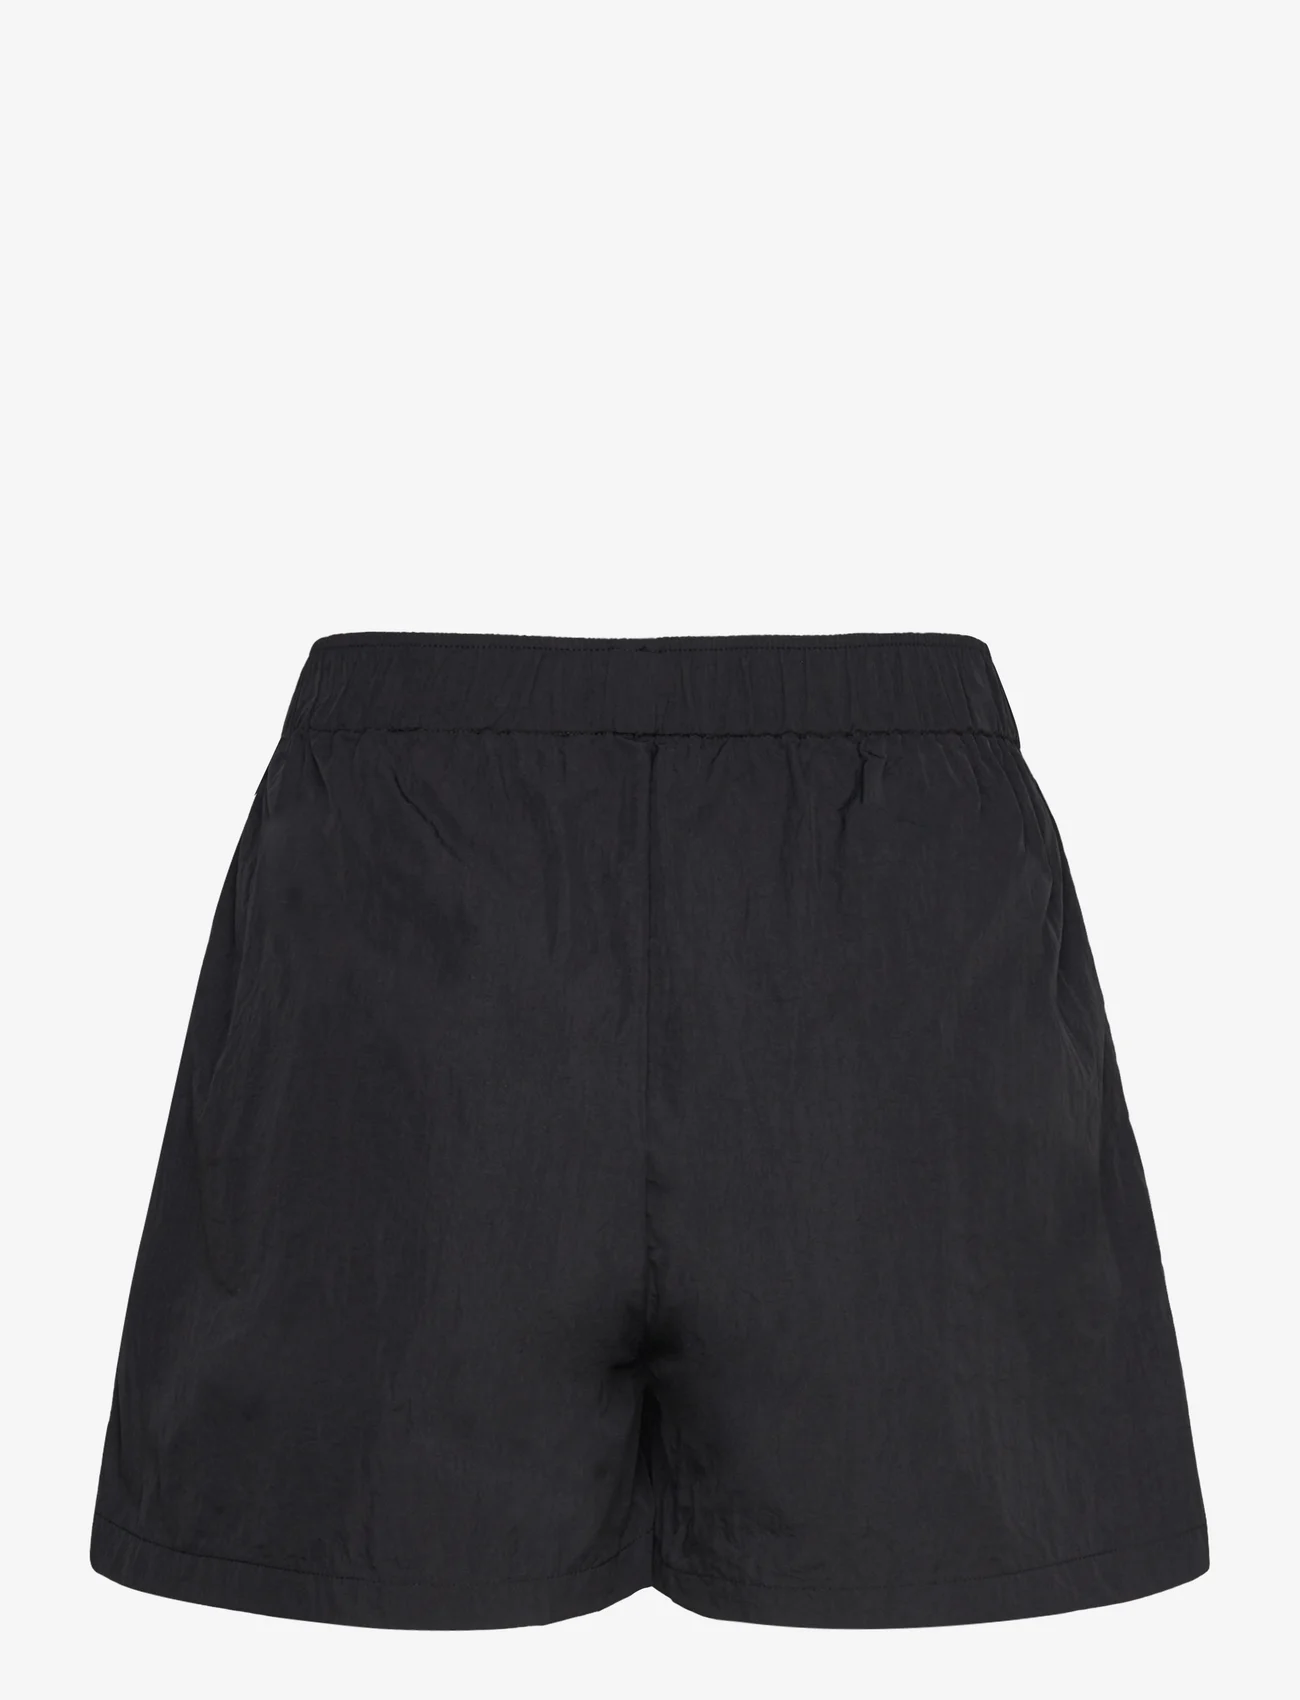 Sofie Schnoor - Shorts - lühikesed dressipüksid - black - 1